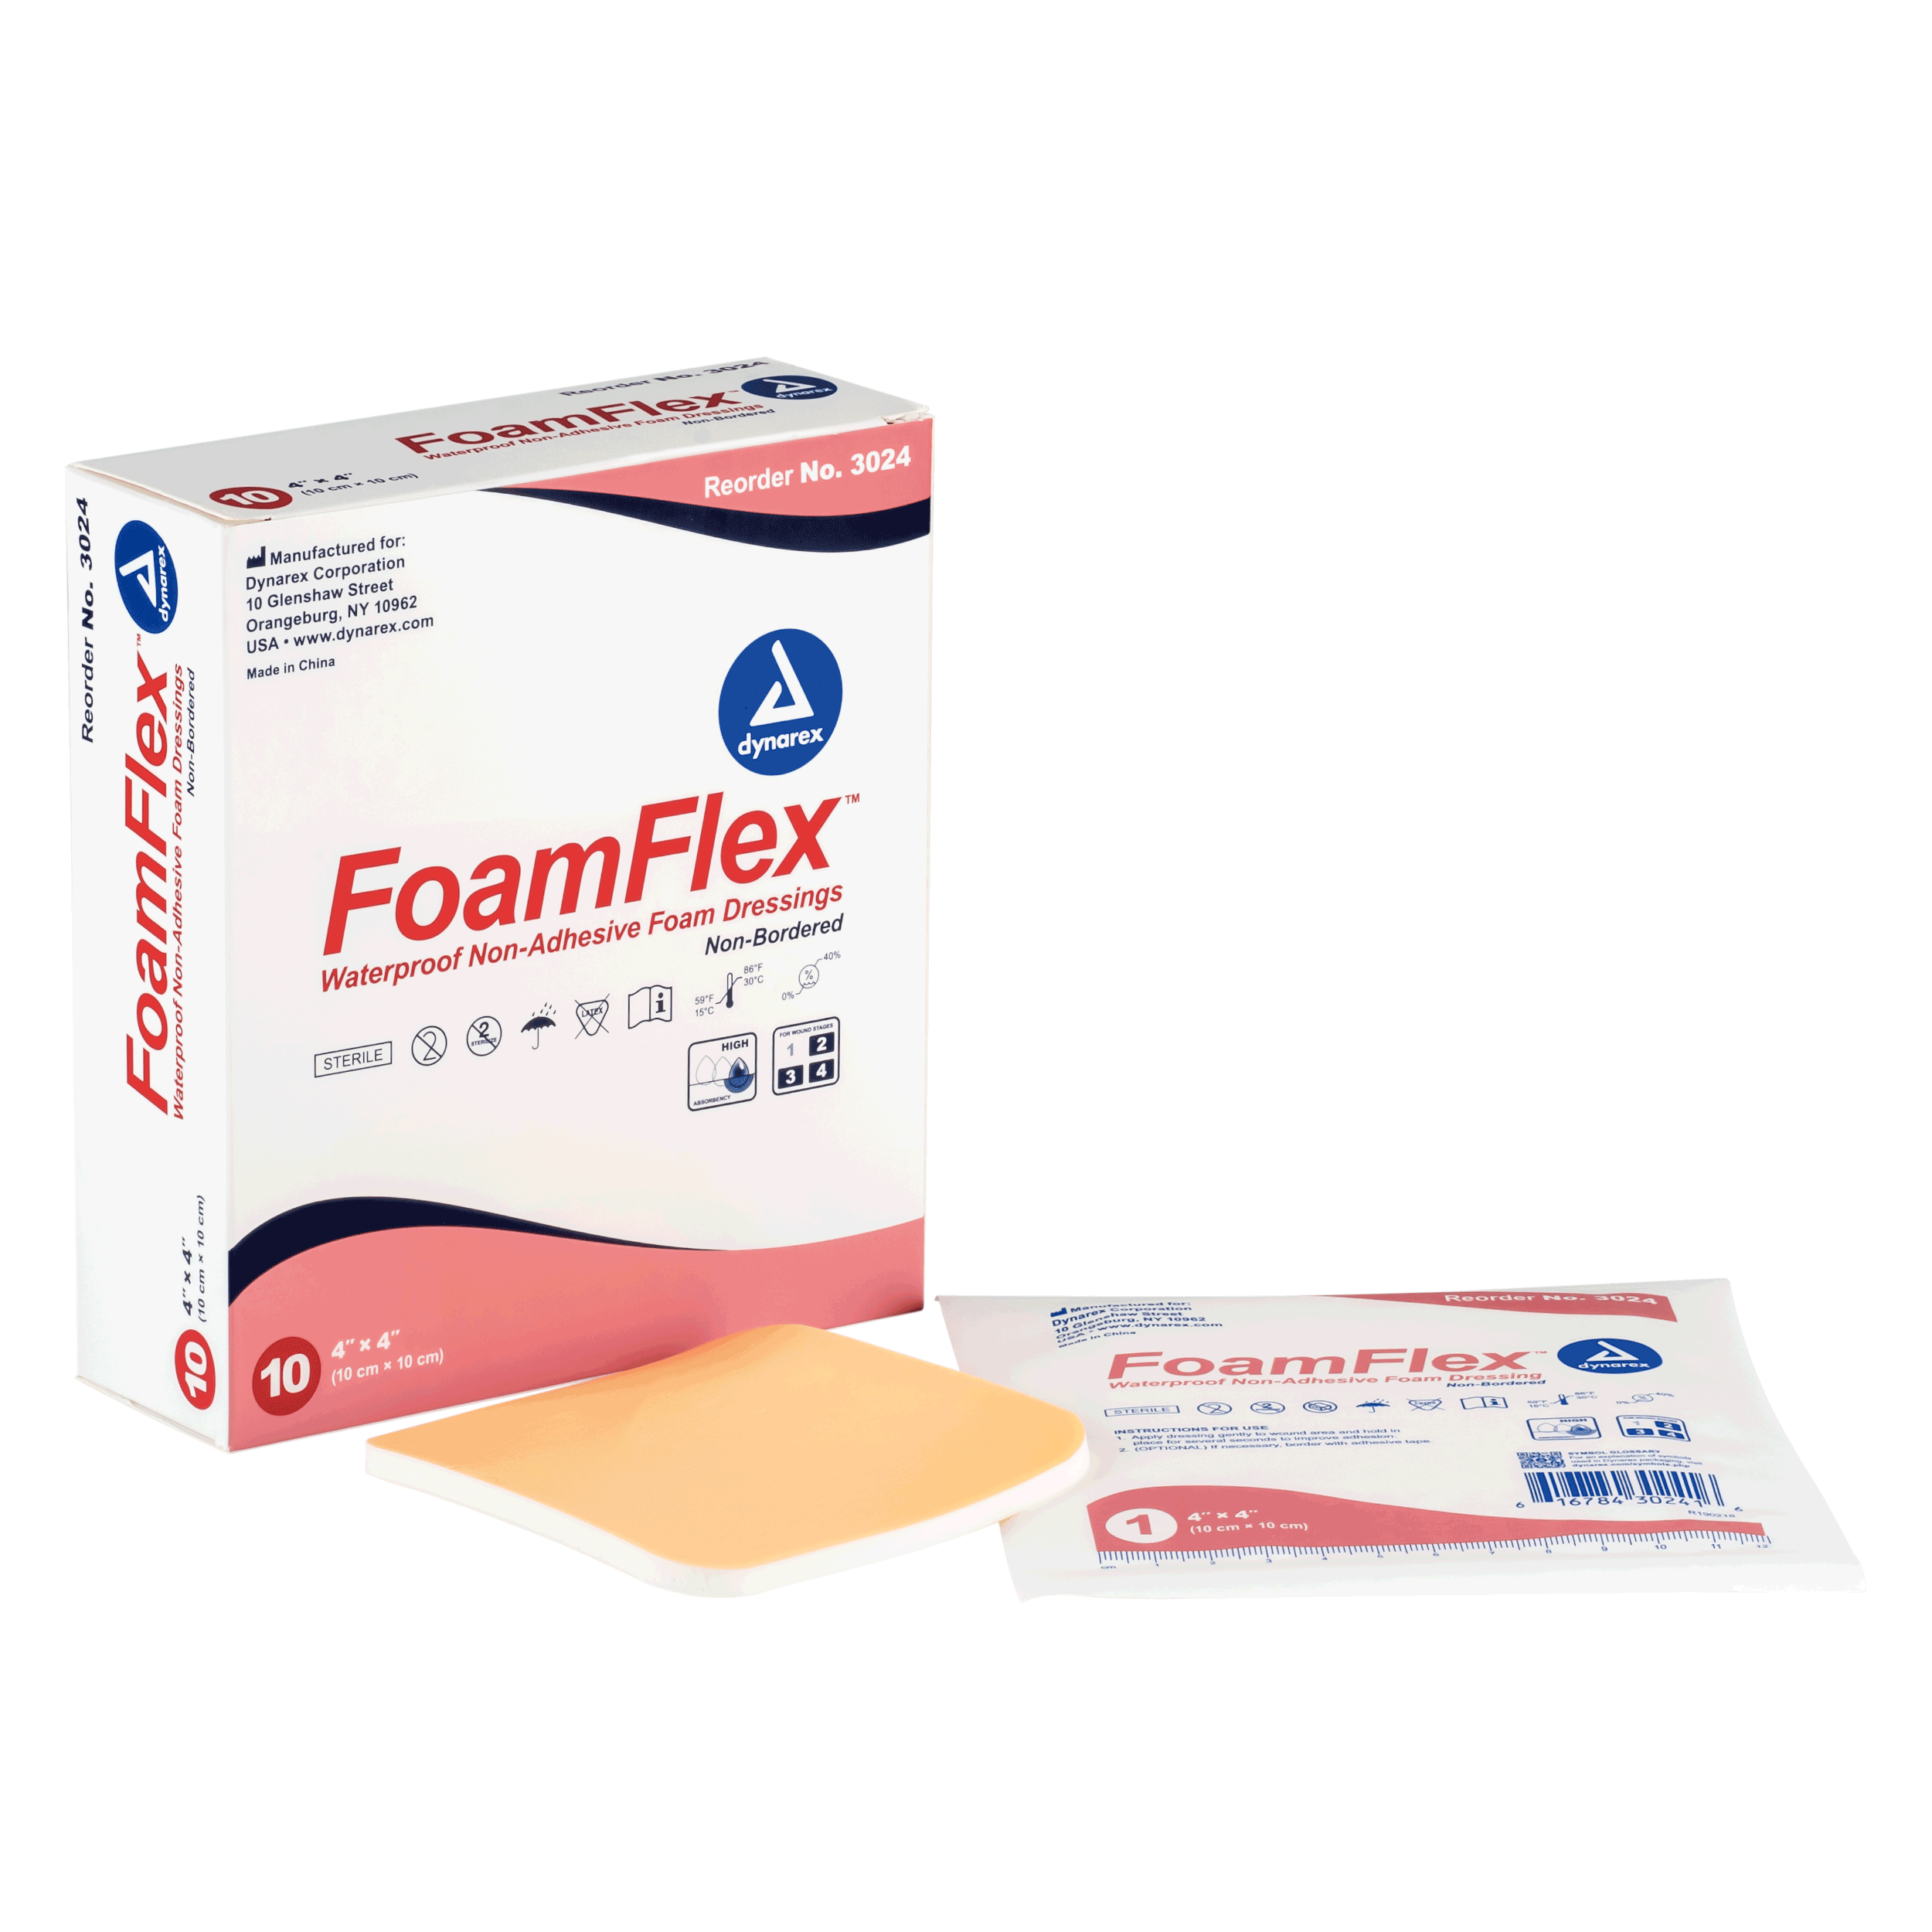 FoamFlex™ Non-Adhesive Waterproof Foam Dressing - 4